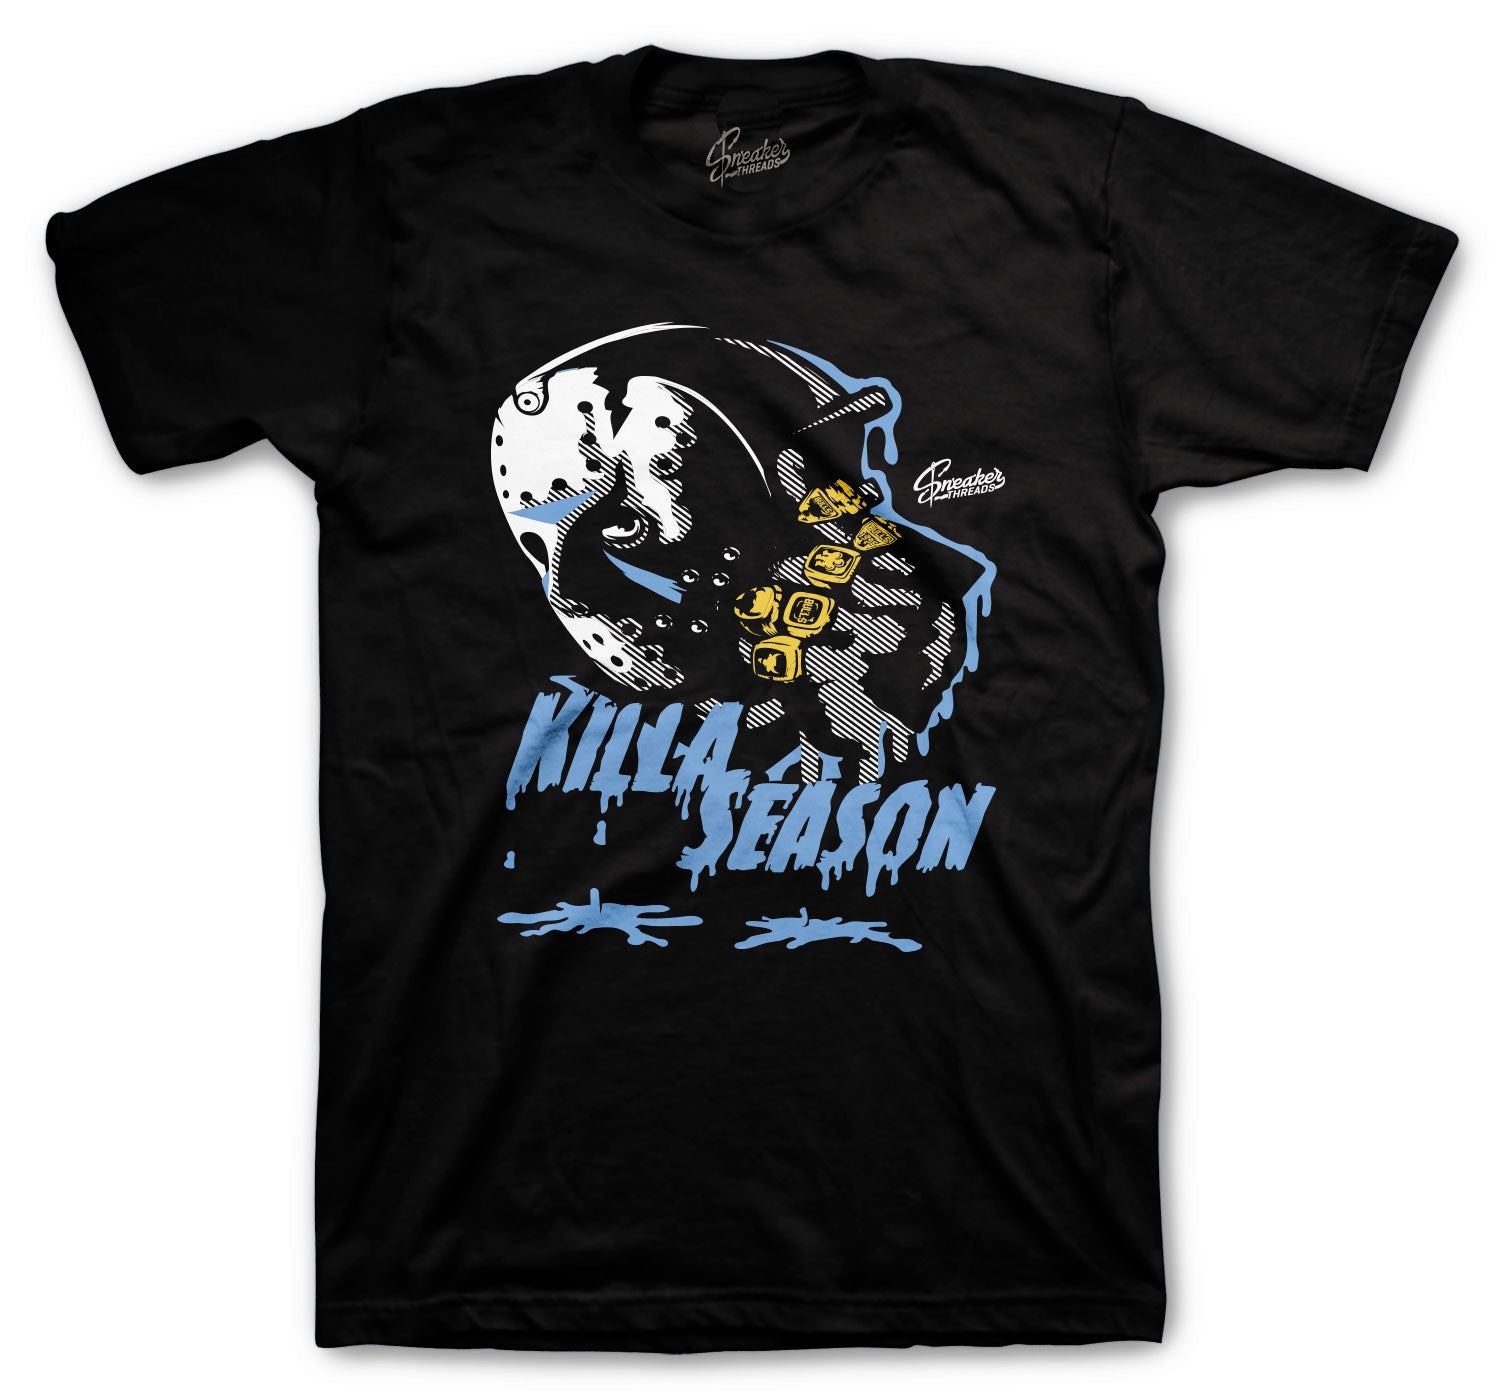 Retro 3 Valor Blue Shirt - Killa Season - Black